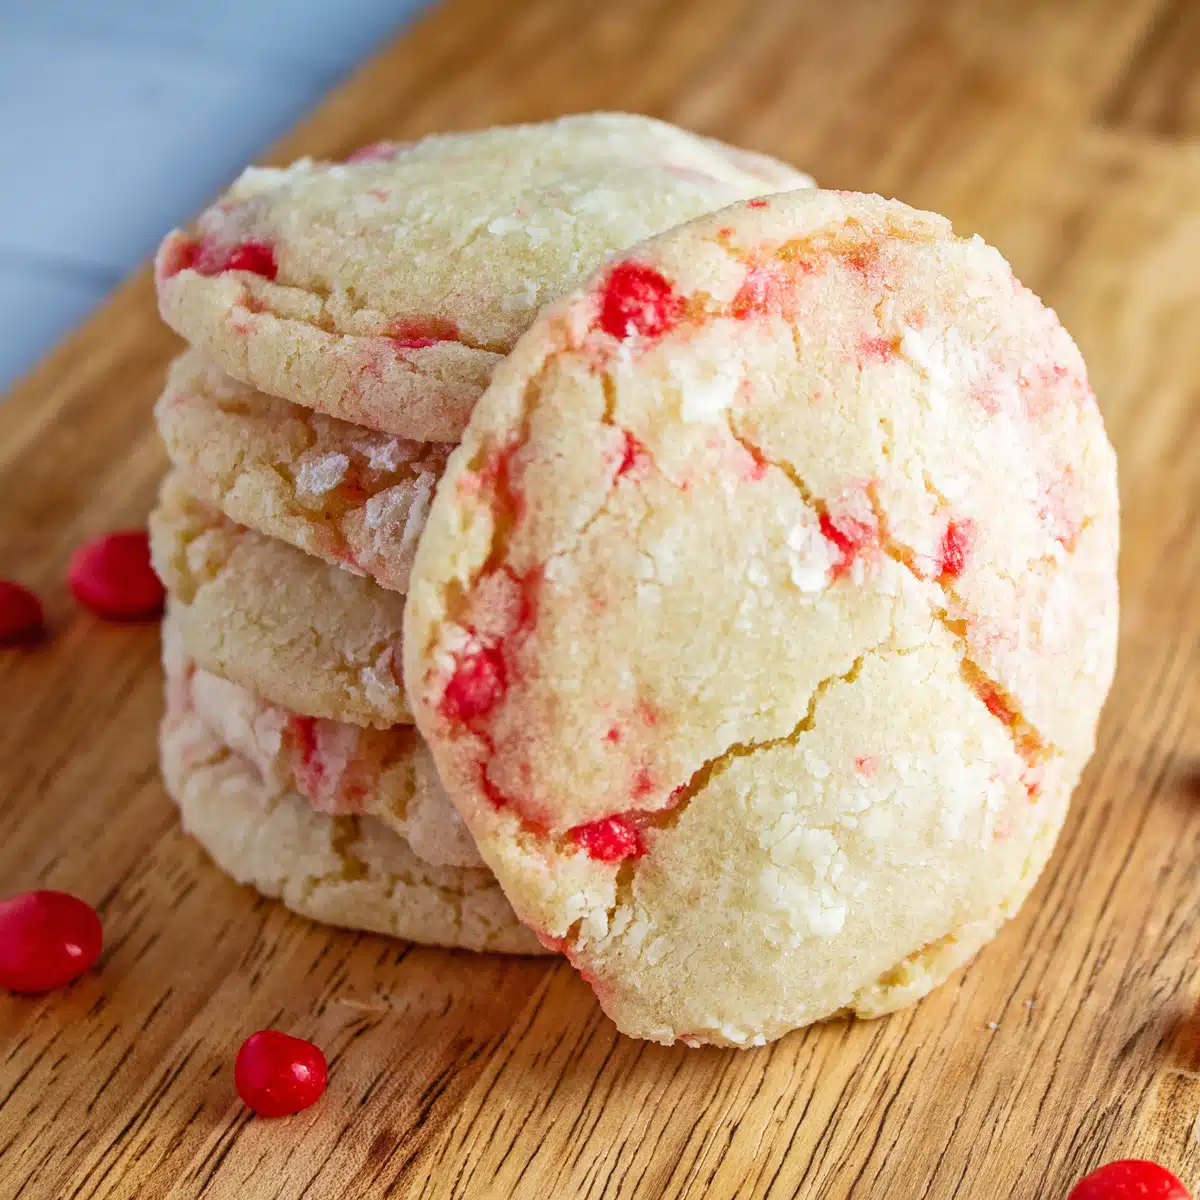 Tender biscoitos quentes vermelhos empilhados na bandeja de madeira com doces quentes vermelhos espalhados ao redor.